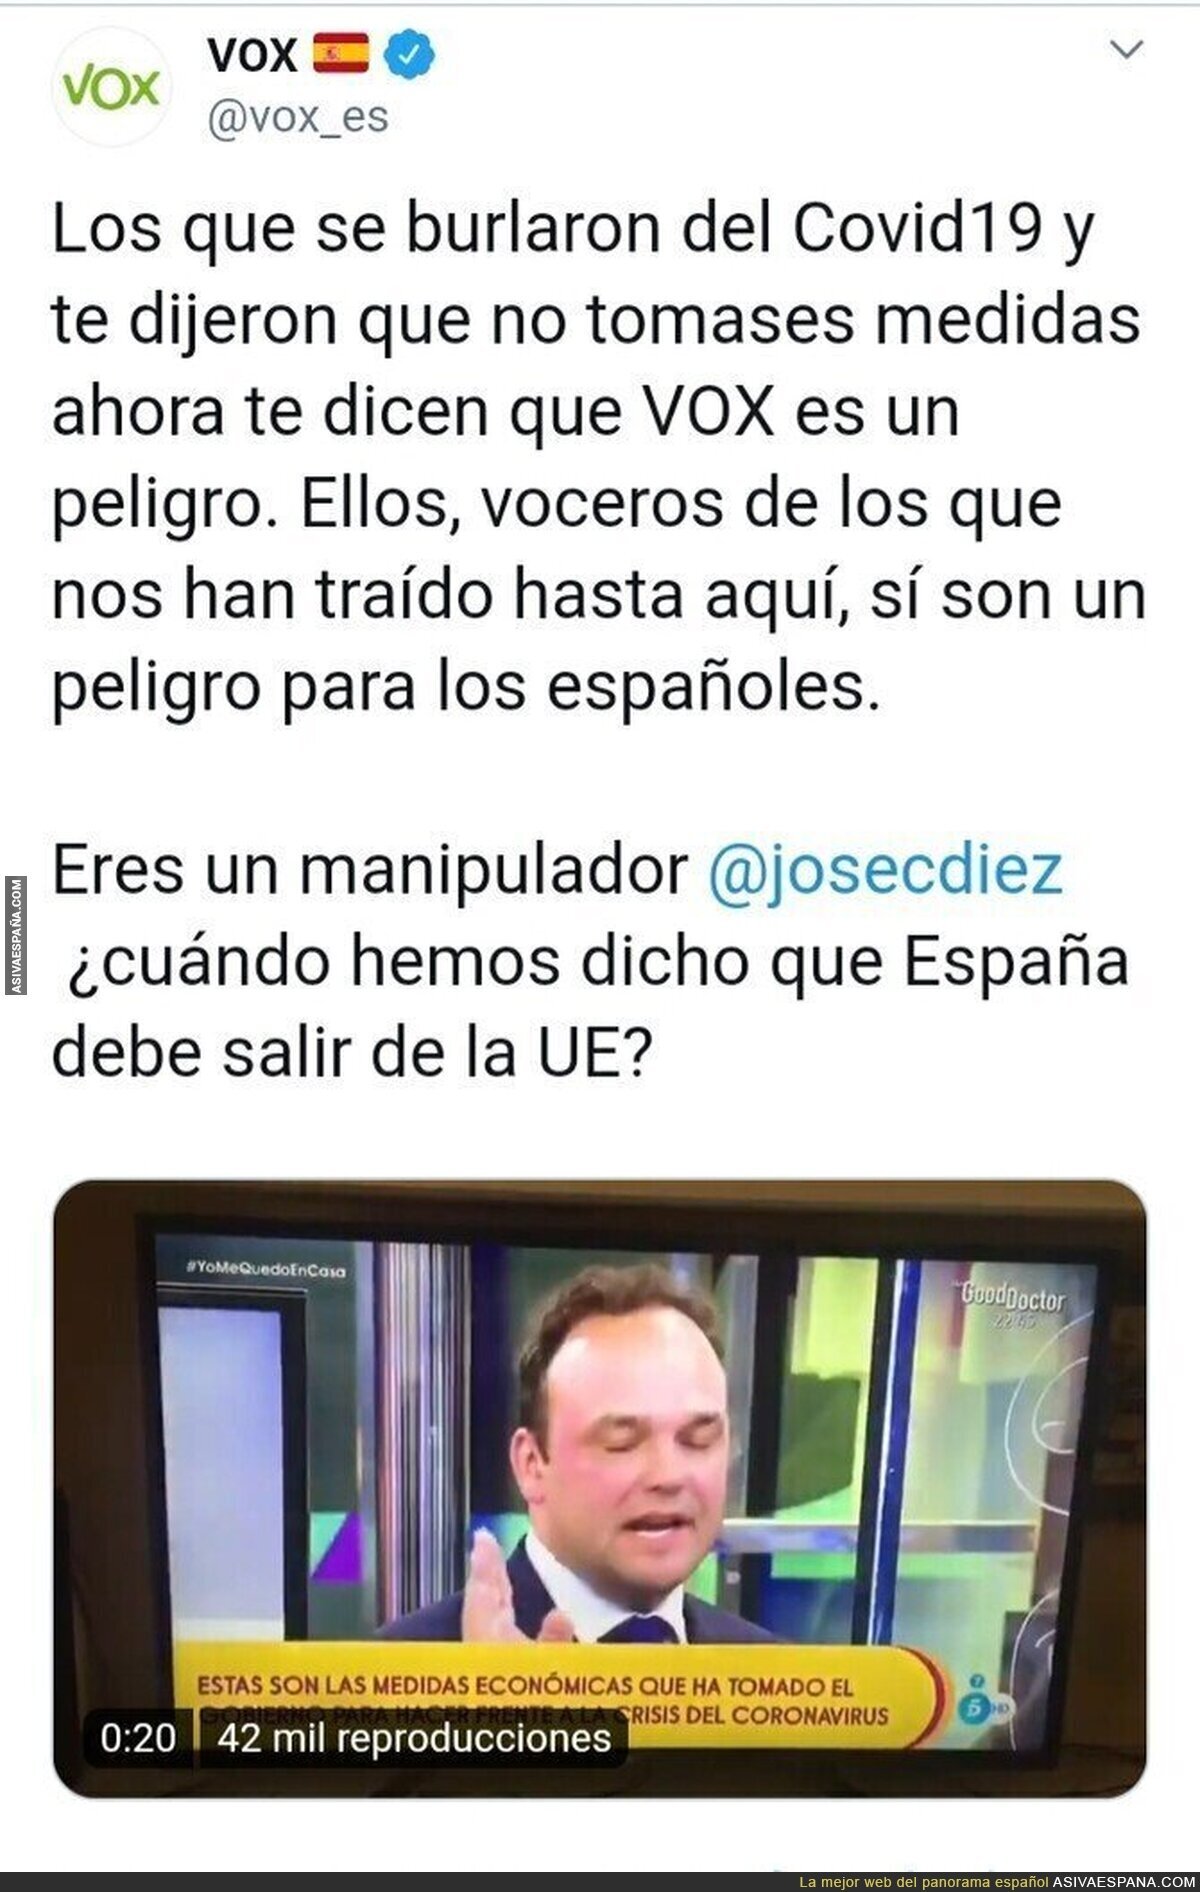 Comienzan las fake news sobre VOX para desviar la atención de los verdaderos responsables del COVID19 en España